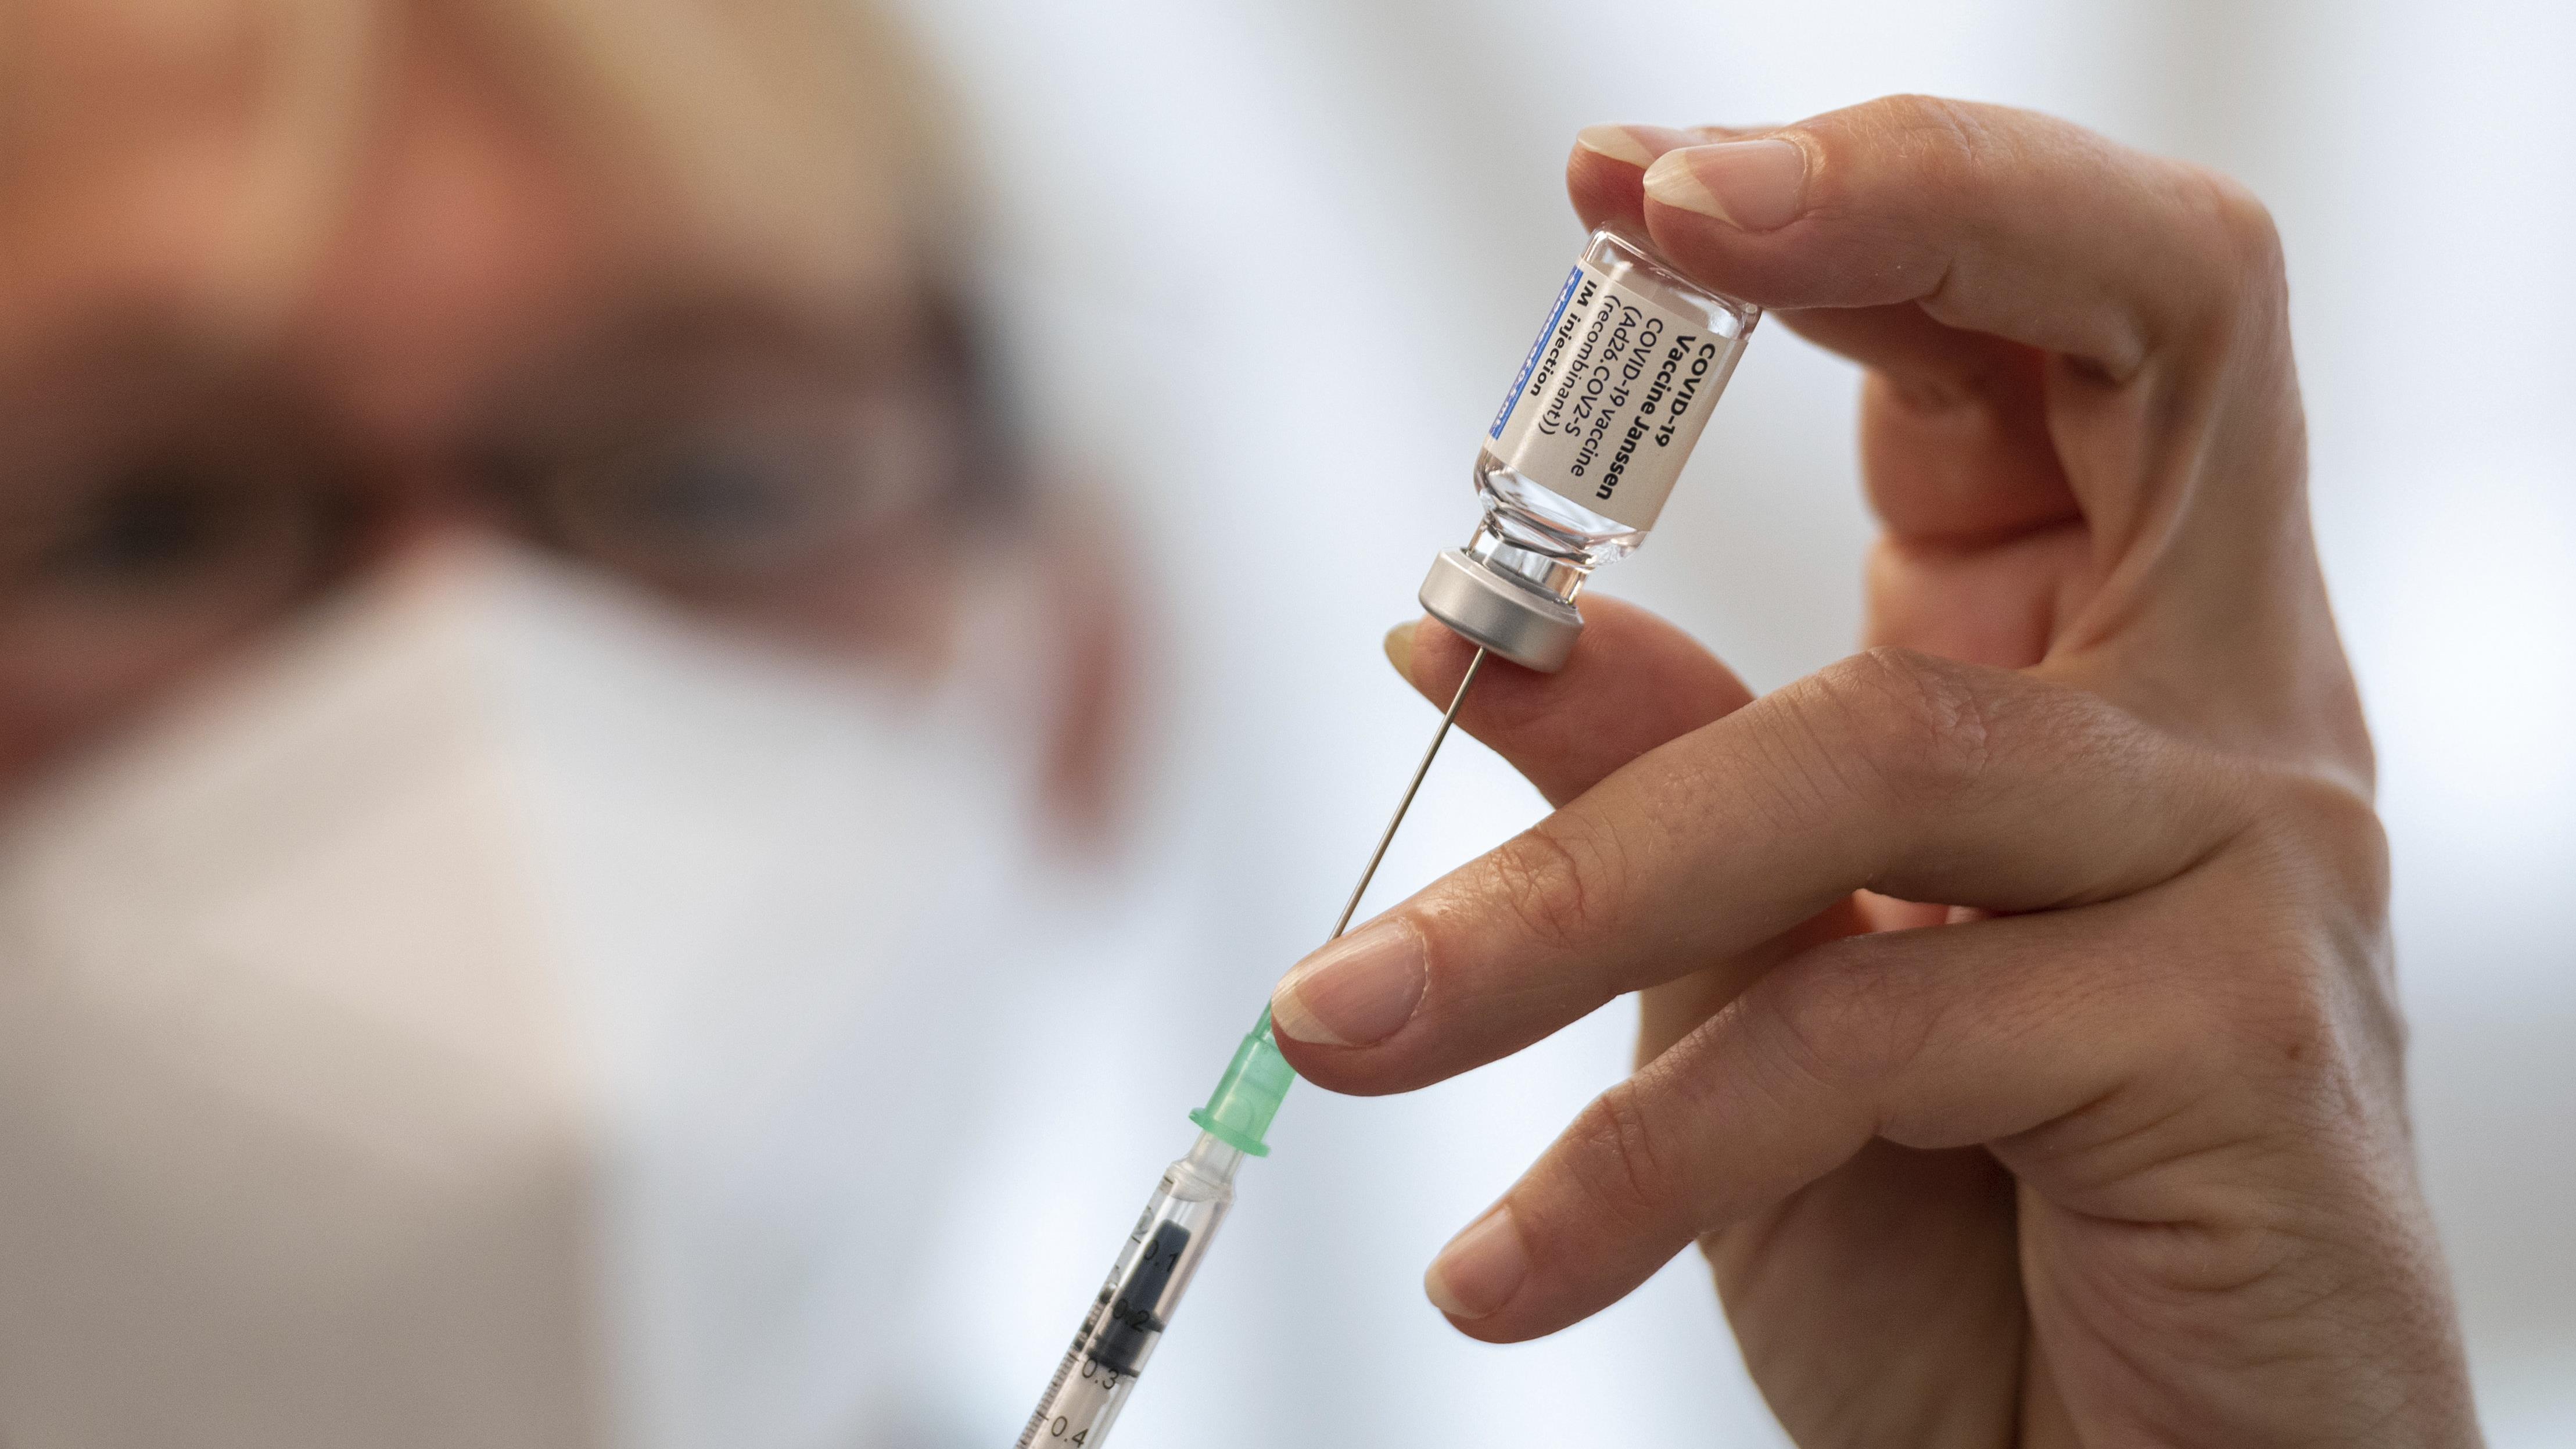 Exemption vaccinale pour les personnes à risque :  Dr Mathieu Larrivée
Exemption vaccinale pour les personnes à risque :  Dr Mathieu Larrivée